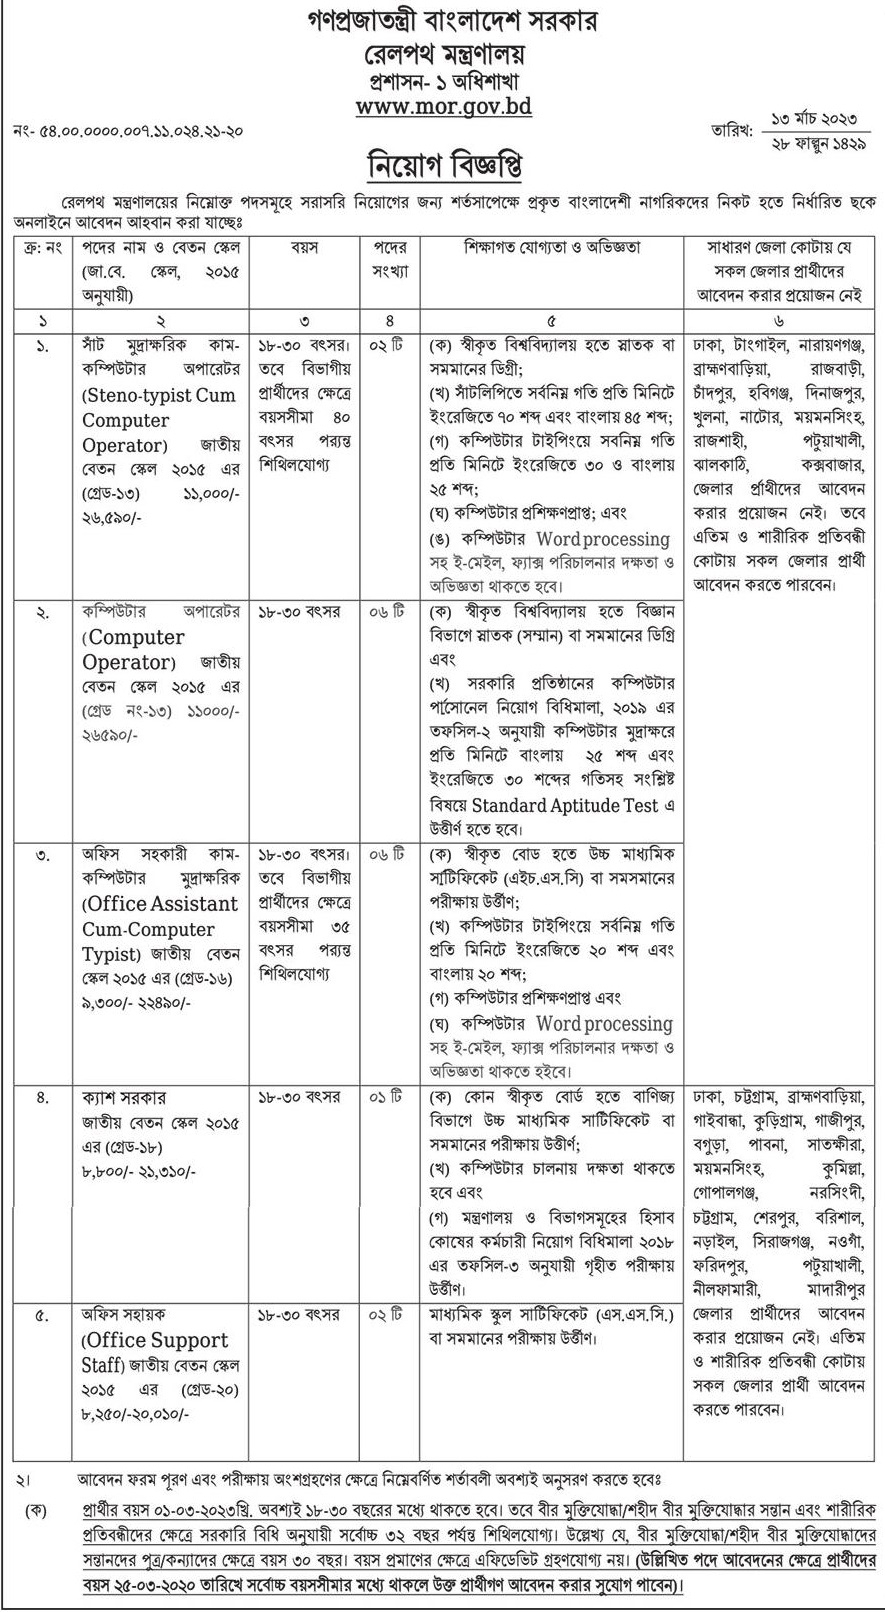 রেলওয়ে নিয়োগ 2023 - বাংলাদেশ রেলওয়ে নতুন নিয়োগ বিজ্ঞপ্তি ২০২৩ - Bangladesh Railway Job Circular 2023 - railway.gov.bd job circular 2023 - রেলওয়ে নিয়োগ বিজ্ঞপ্তি ২০২৩